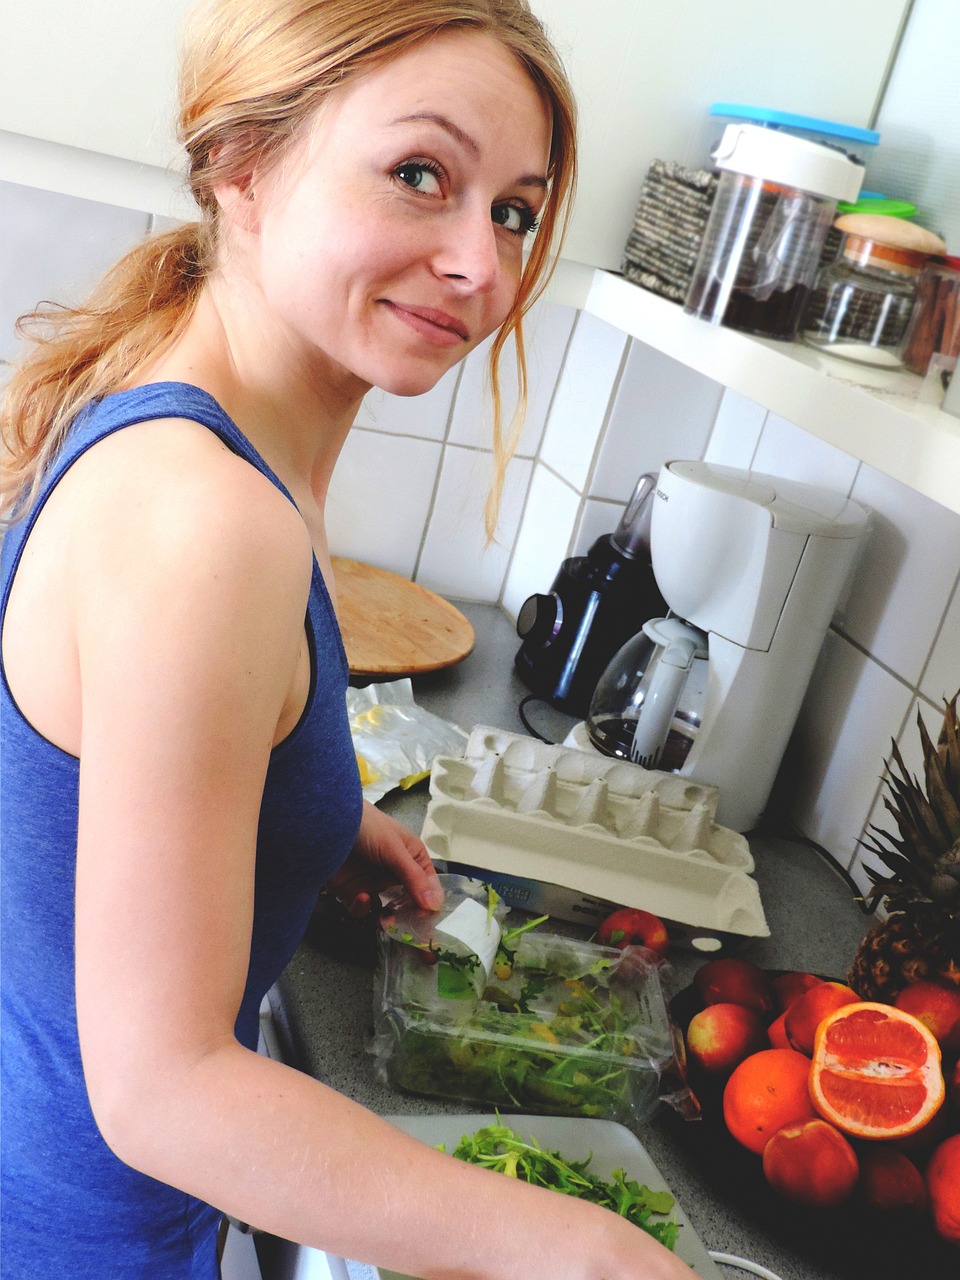 Frau lächelnd in der Küche | Quelle: Pixabay